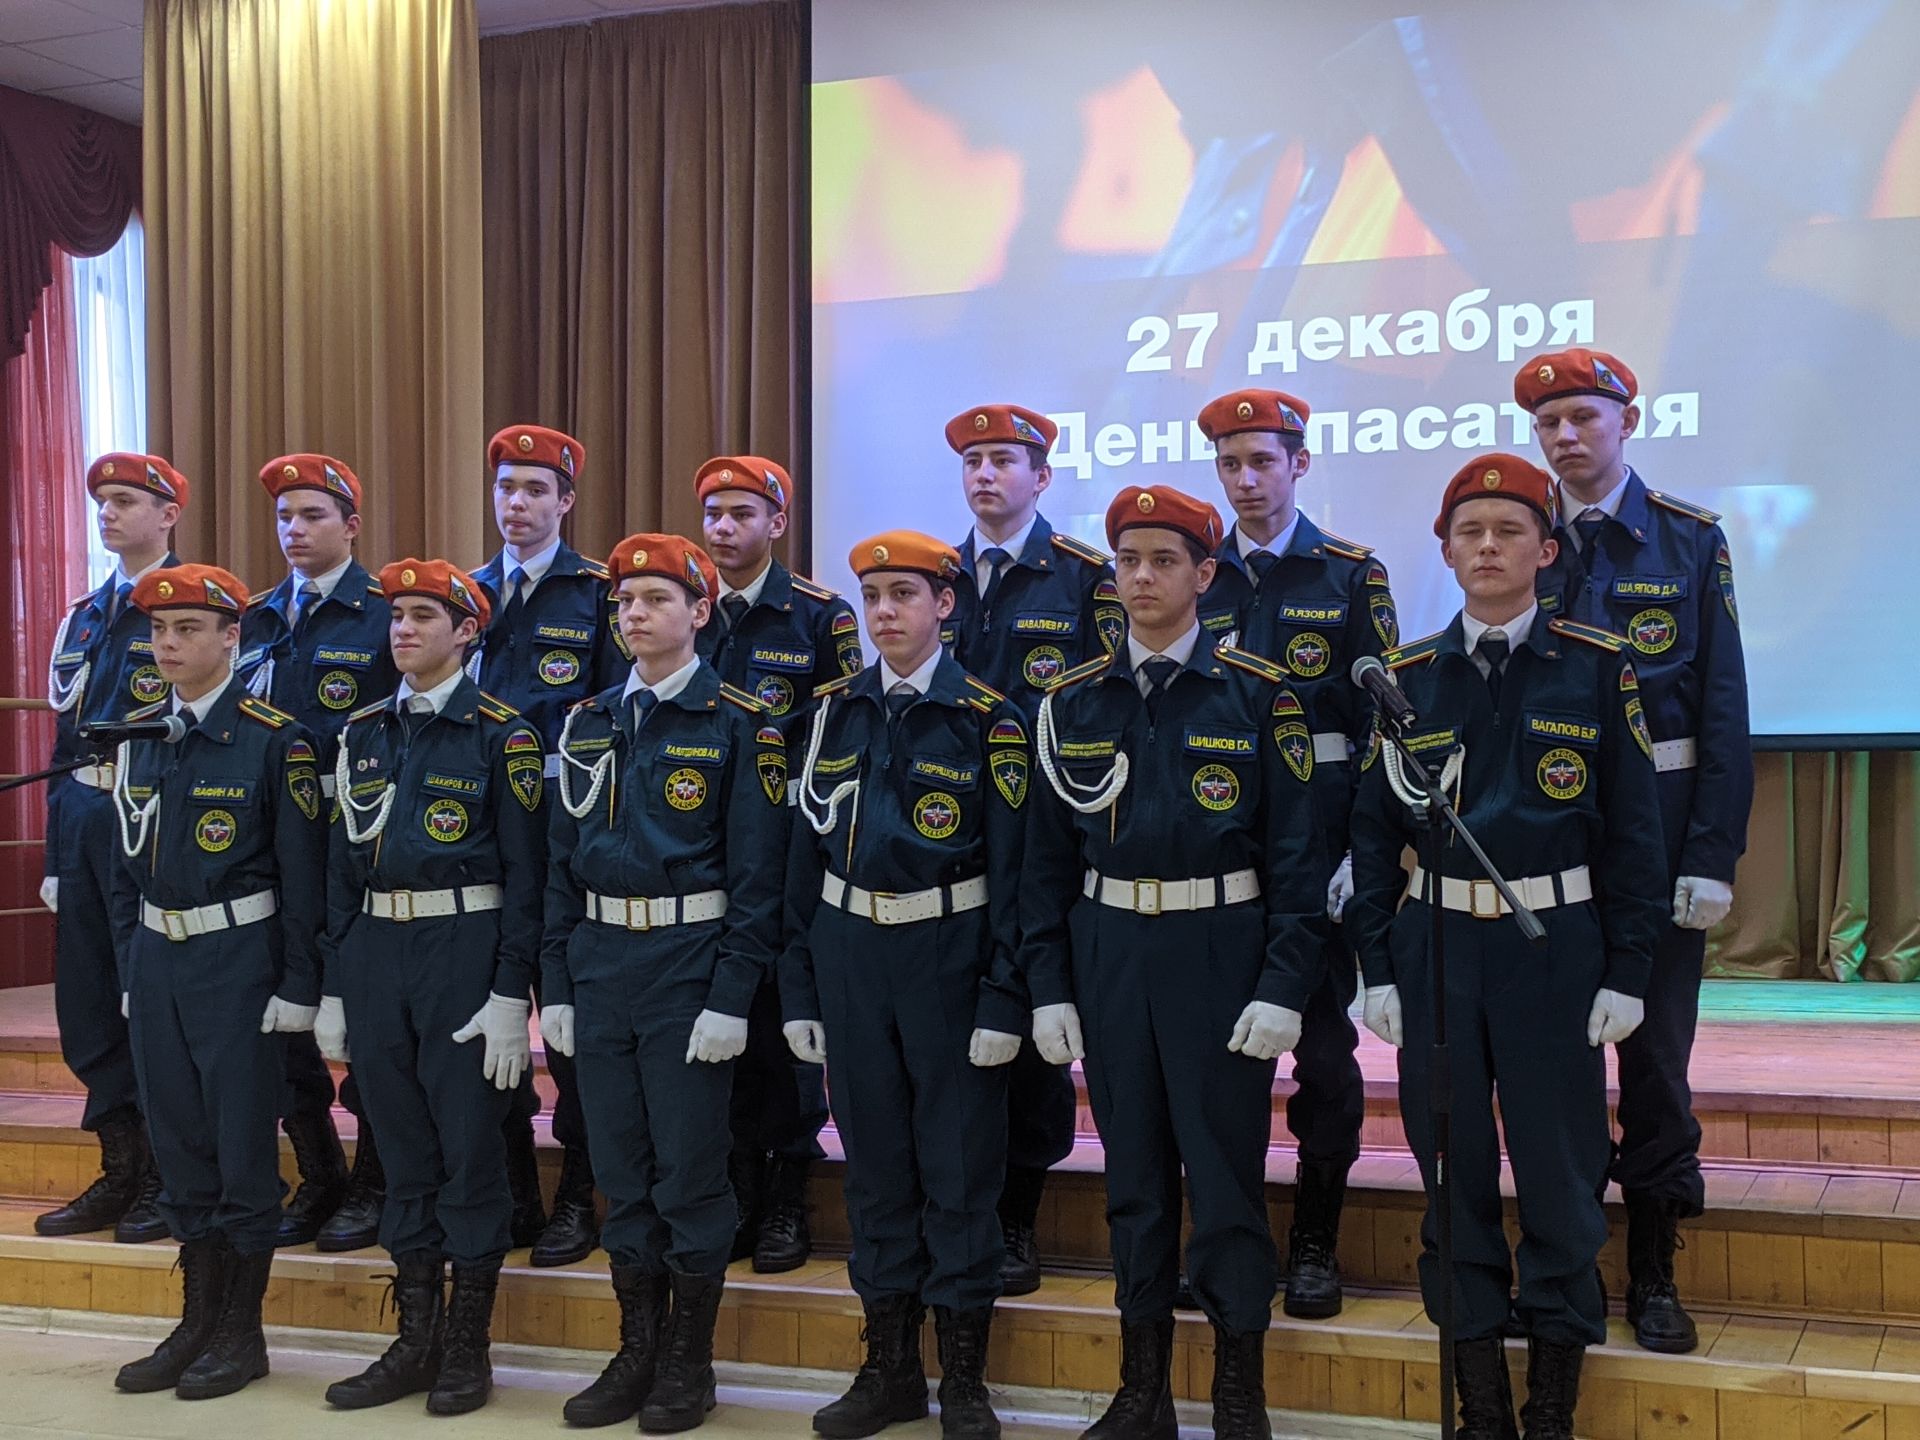 В Тетюшском колледже гражданской защиты проходит концерт ко Дню спасателя РФ